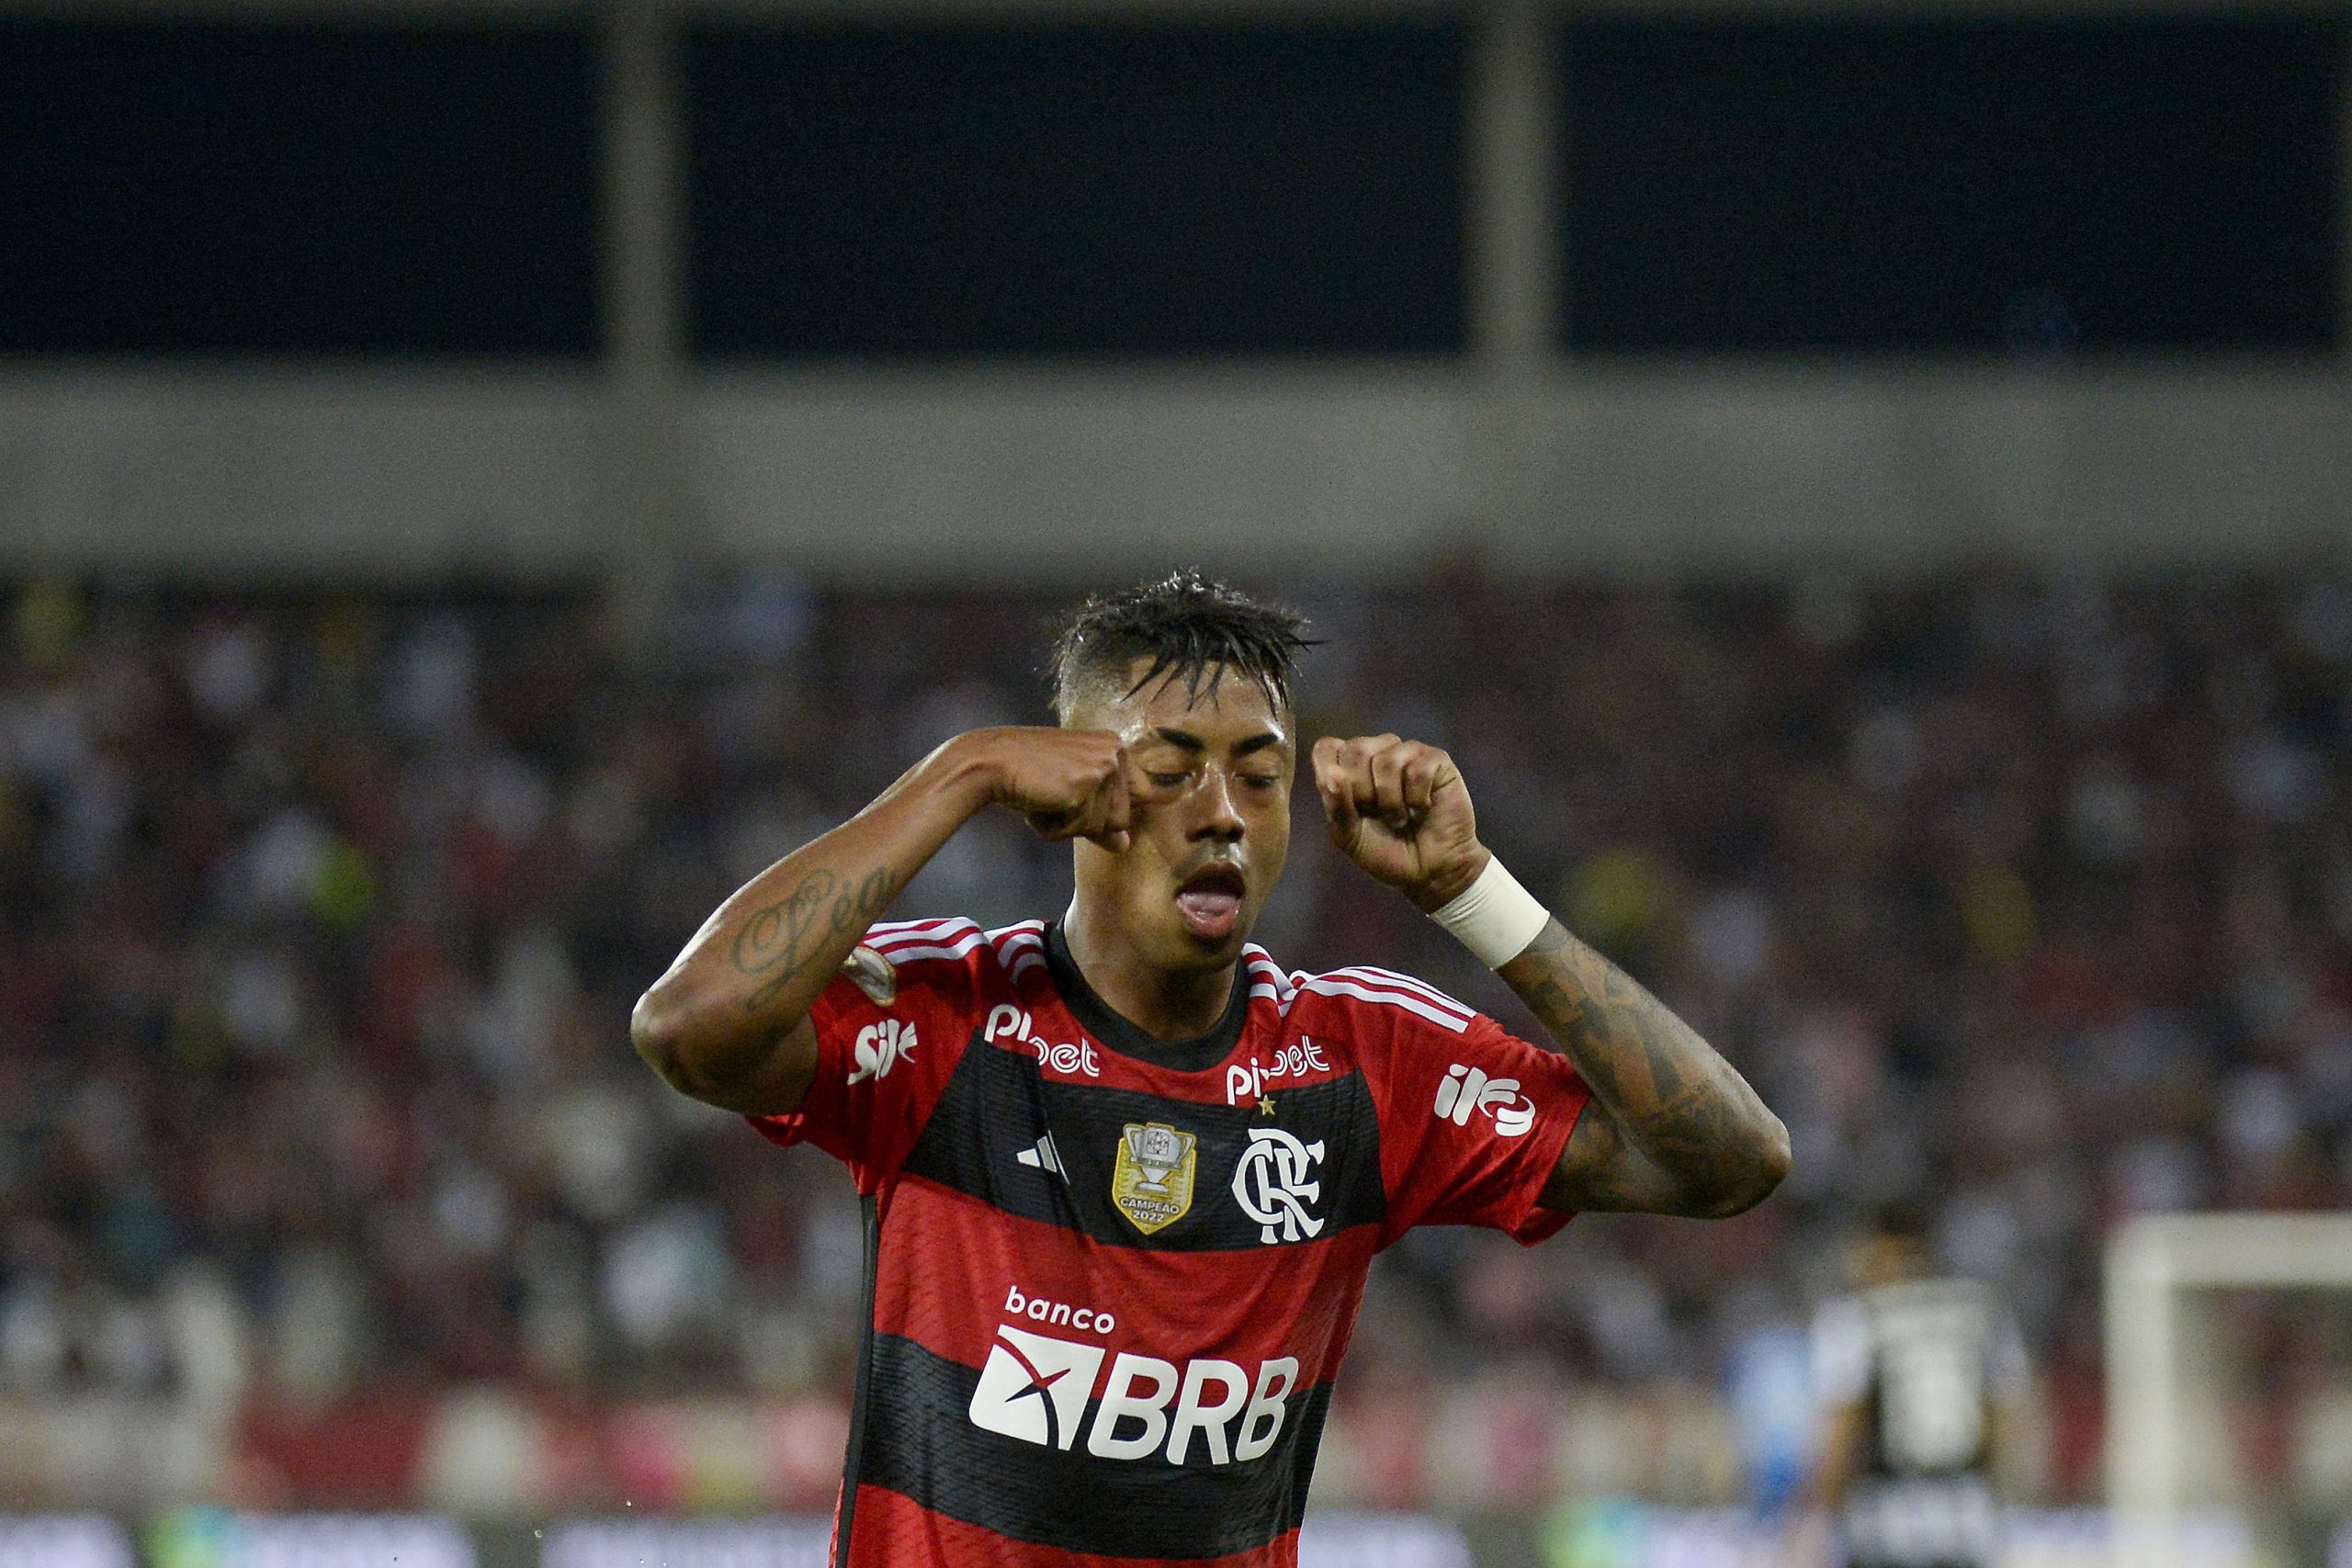 Flu domina clássico no Nilton Santos e vence o Botafogo com gol de